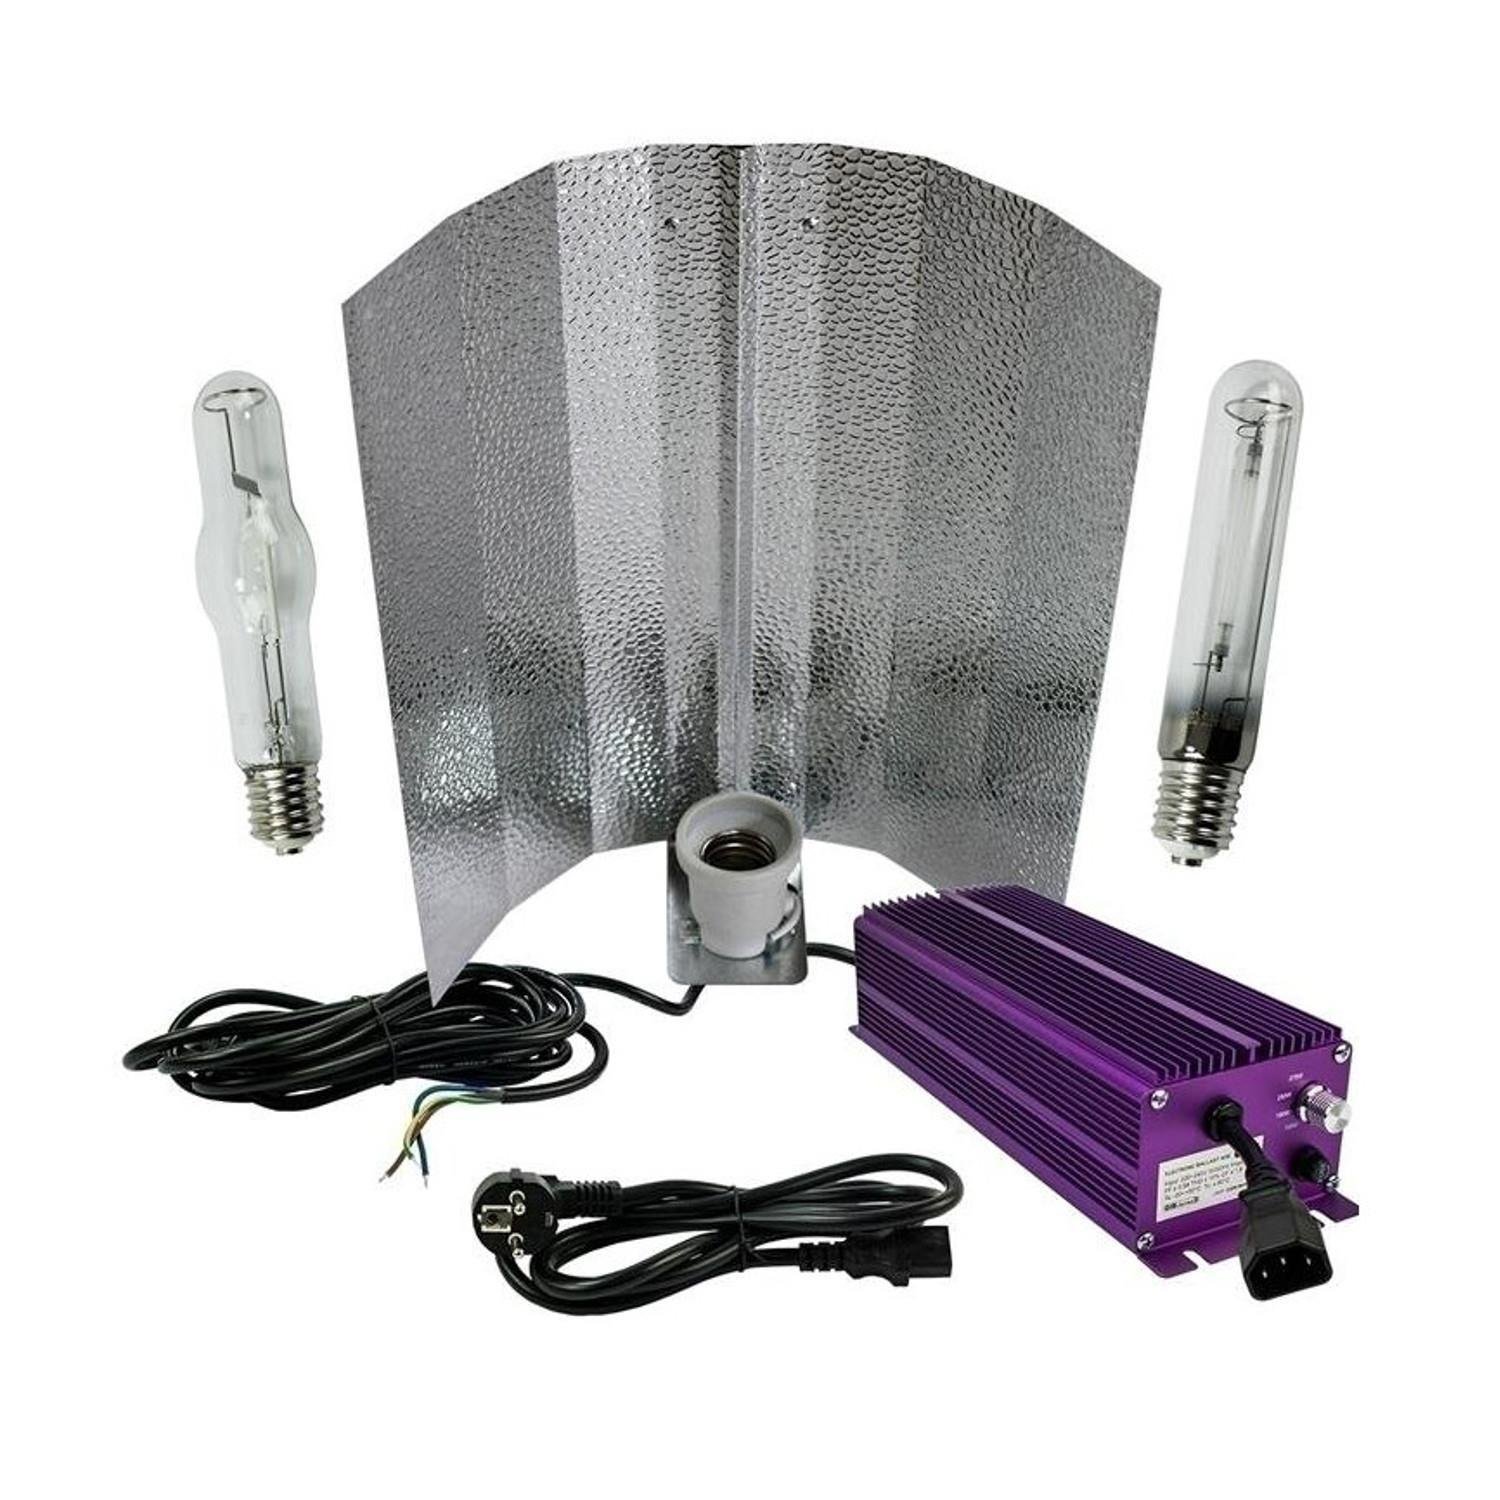 Lumatek Bausatz 1000W Wuchs und Blüte- schaltbar unter Beleuchtung > Natriumdampflampen > Lampensets